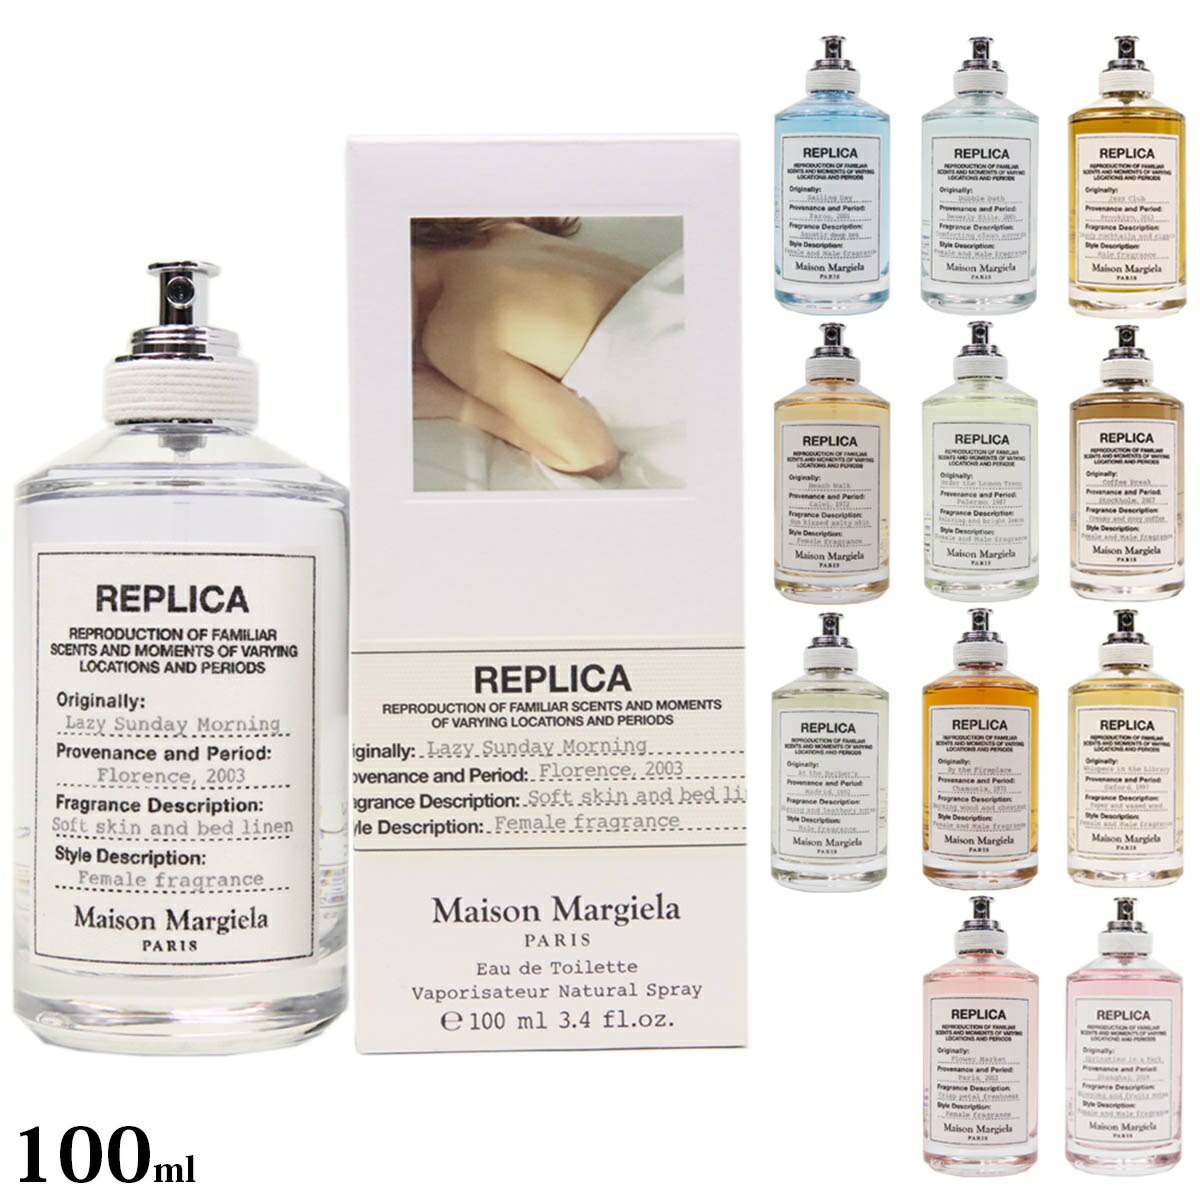 メゾン マルジェラ Maison Margiela 香水 メンズ レディース